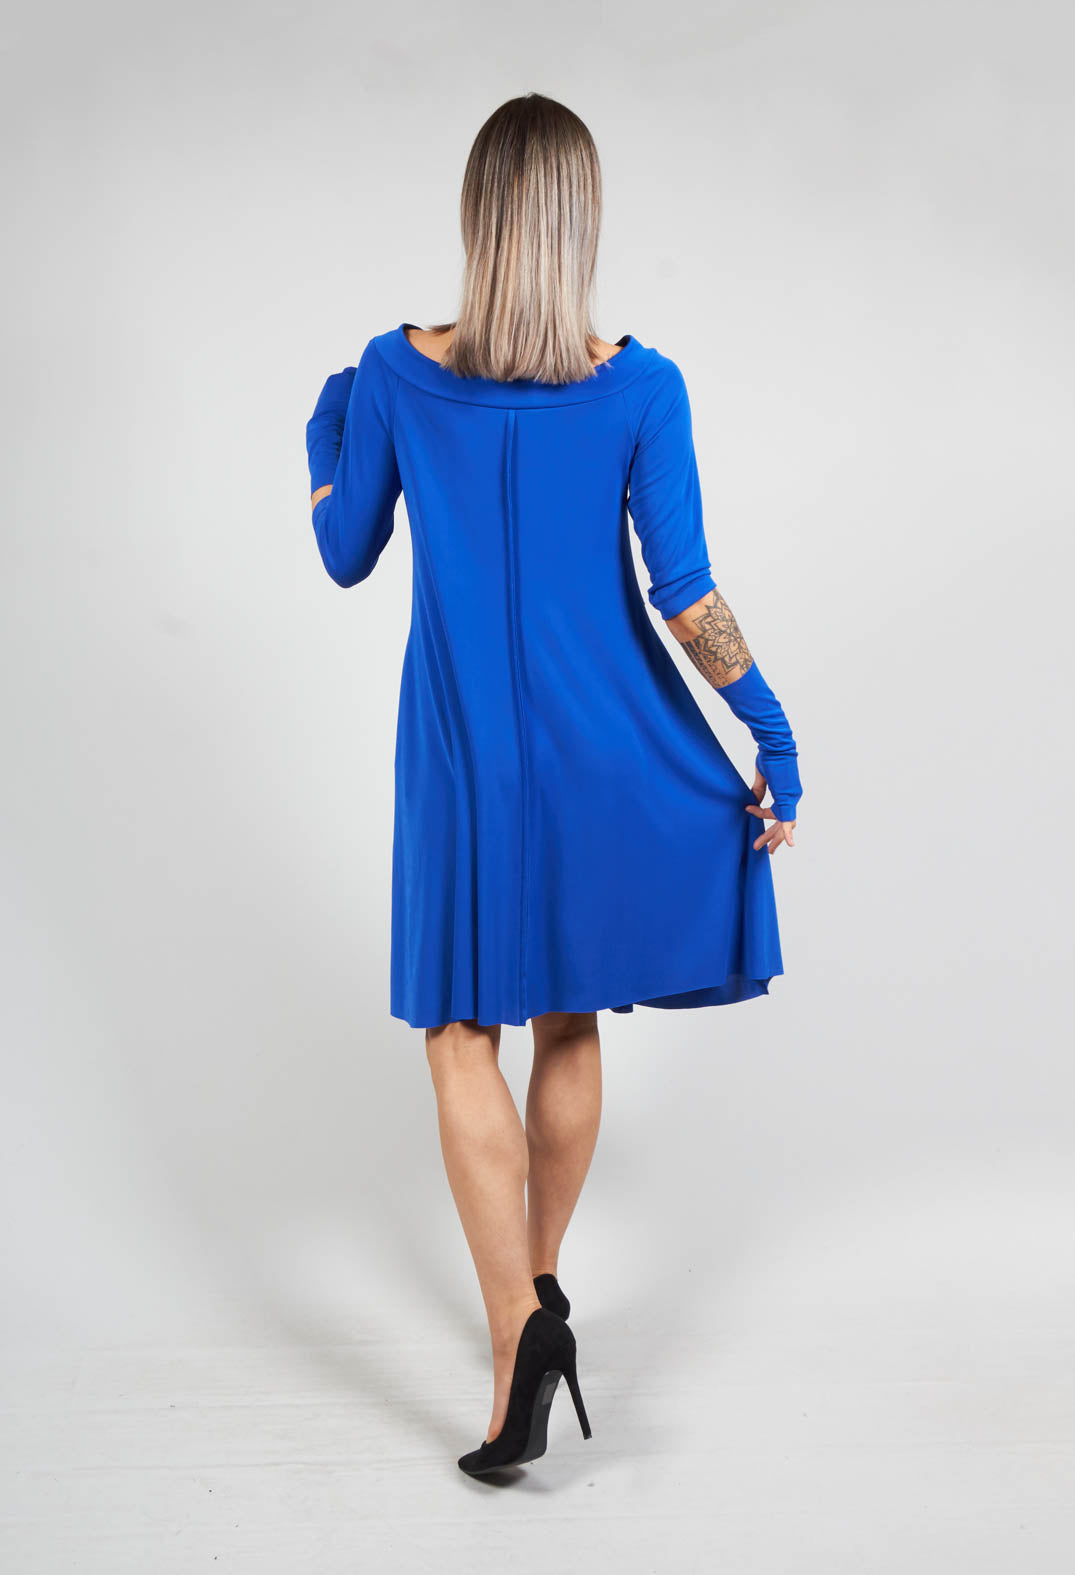 Roja Dress in Blue